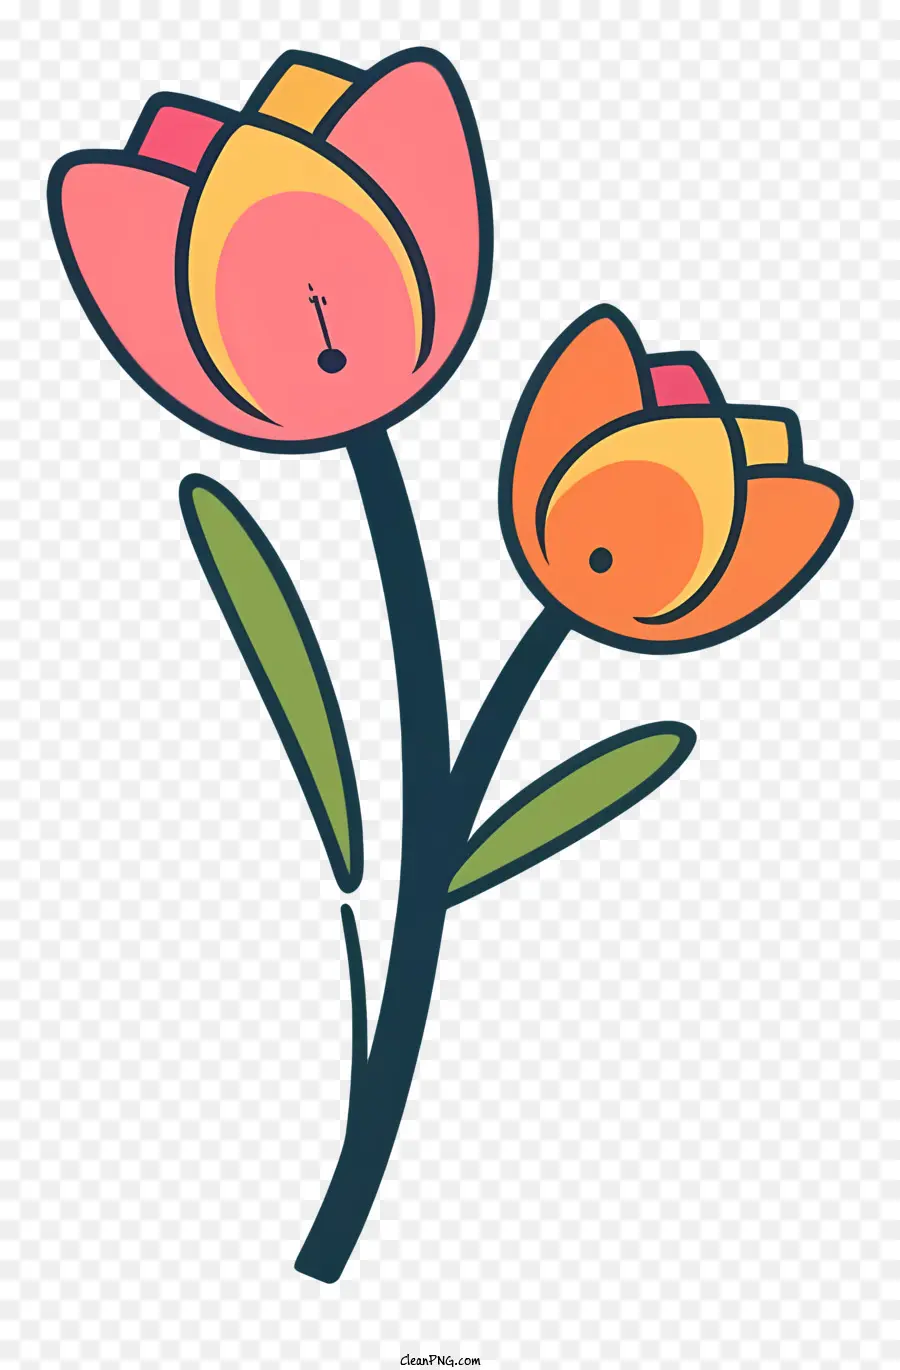 màu hồng tulip cam cánh hoa màu xanh lá cây màu đen phong cách phẳng - Hình ảnh kiểu phẳng của hoa tulip màu hồng trong bình